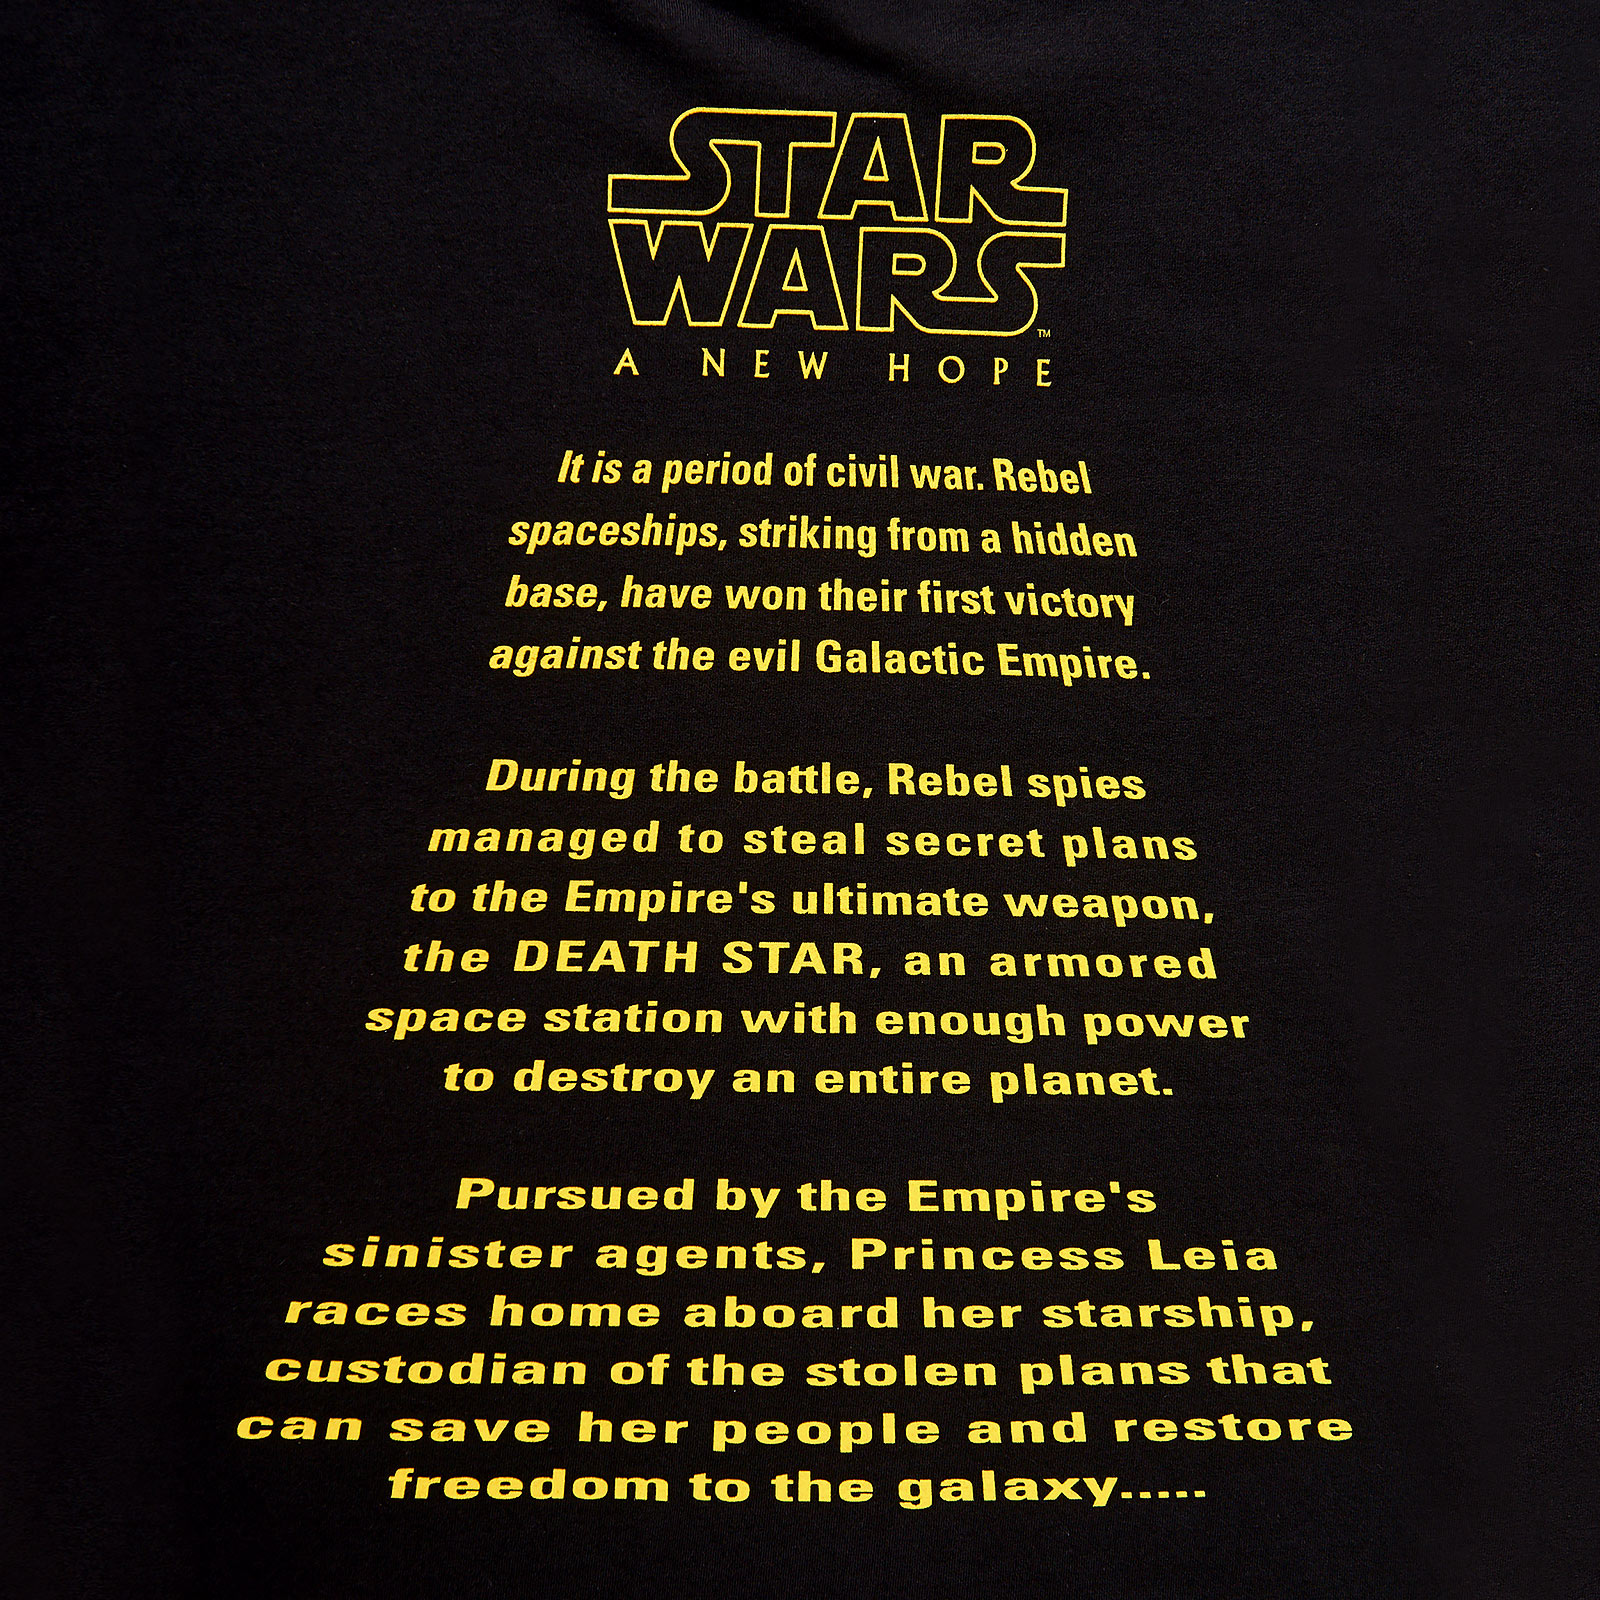 Star Wars - Un Nouvel Espoir T-shirt classique noir